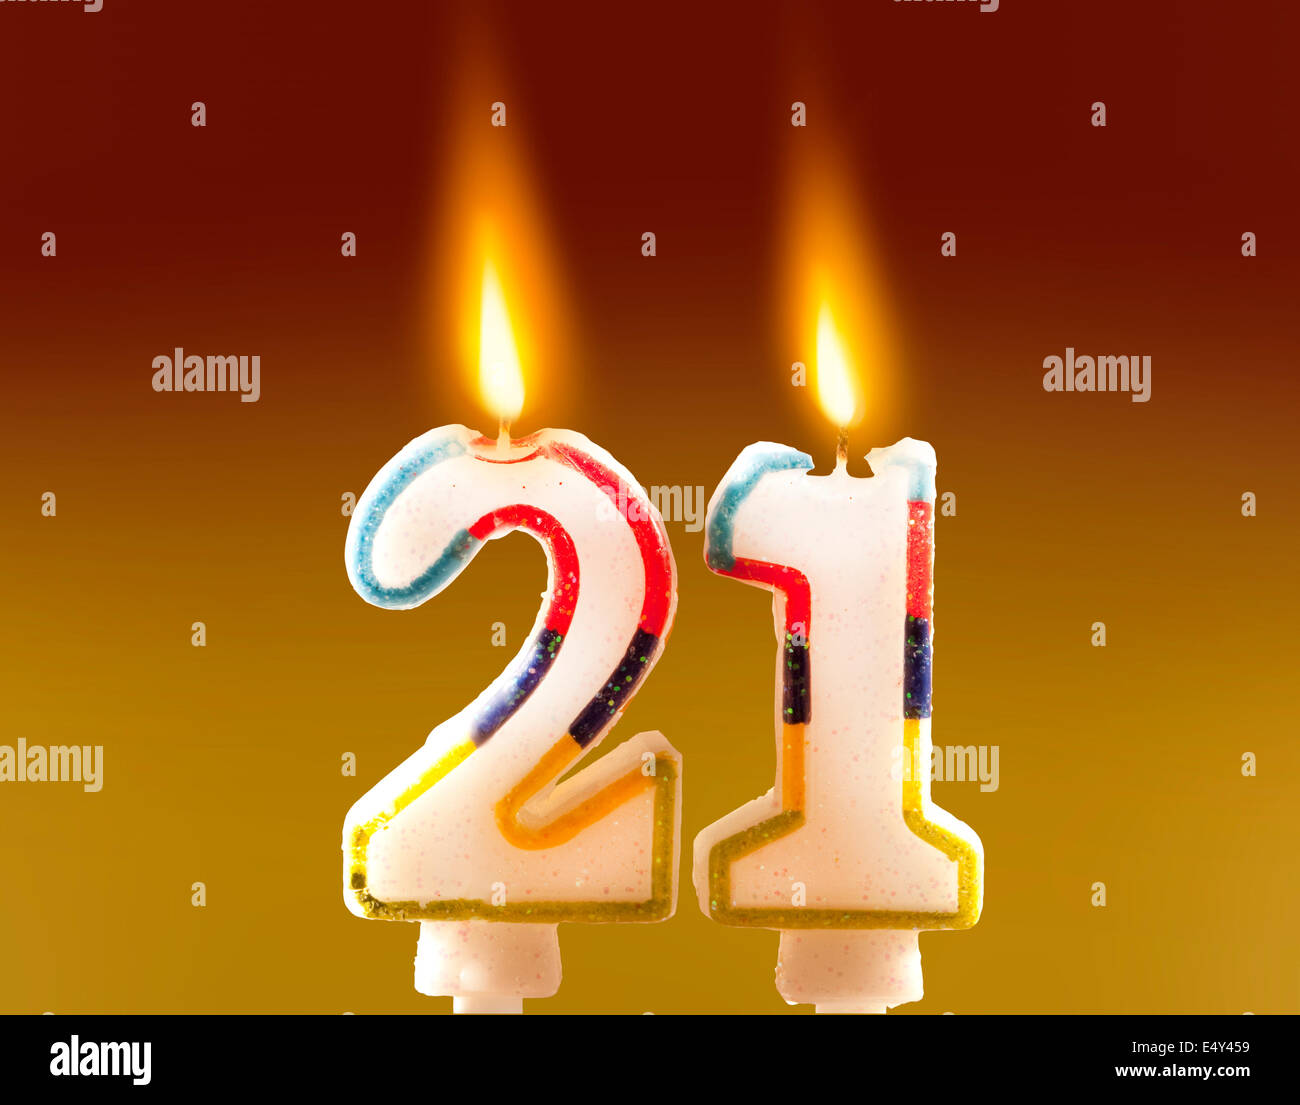 Ventunesimo compleanno - Candele, torta di compleanno candele 21, candele acceso Foto Stock